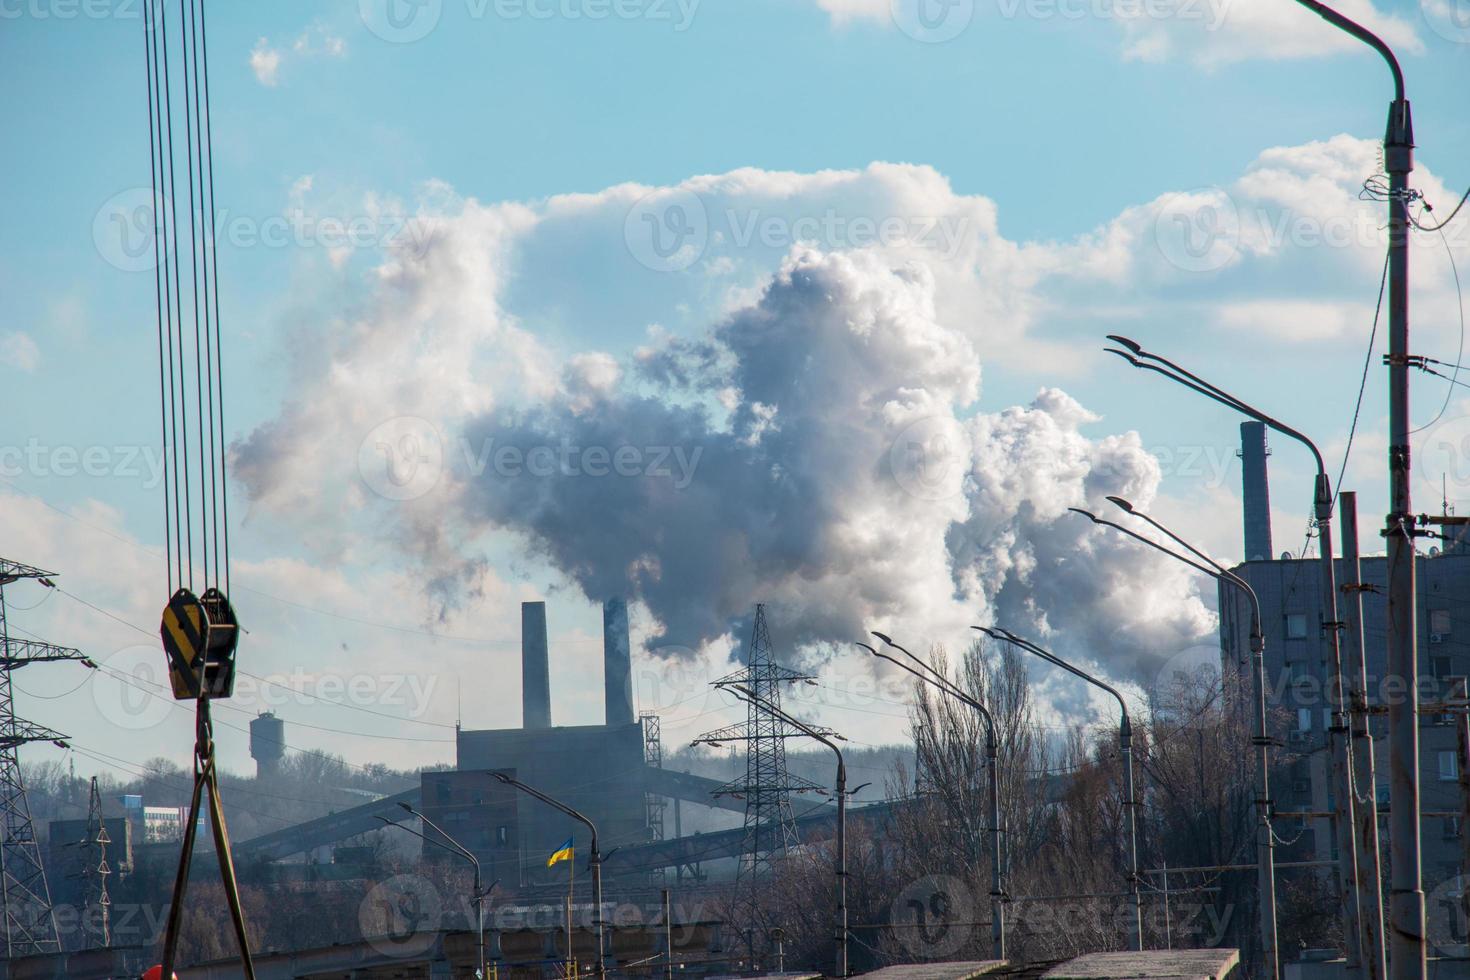 mal ambiente en la ciudad. desastre ambiental. emisiones nocivas al medio ambiente. humo y smog. contaminación de la atmósfera por la fábrica. foto